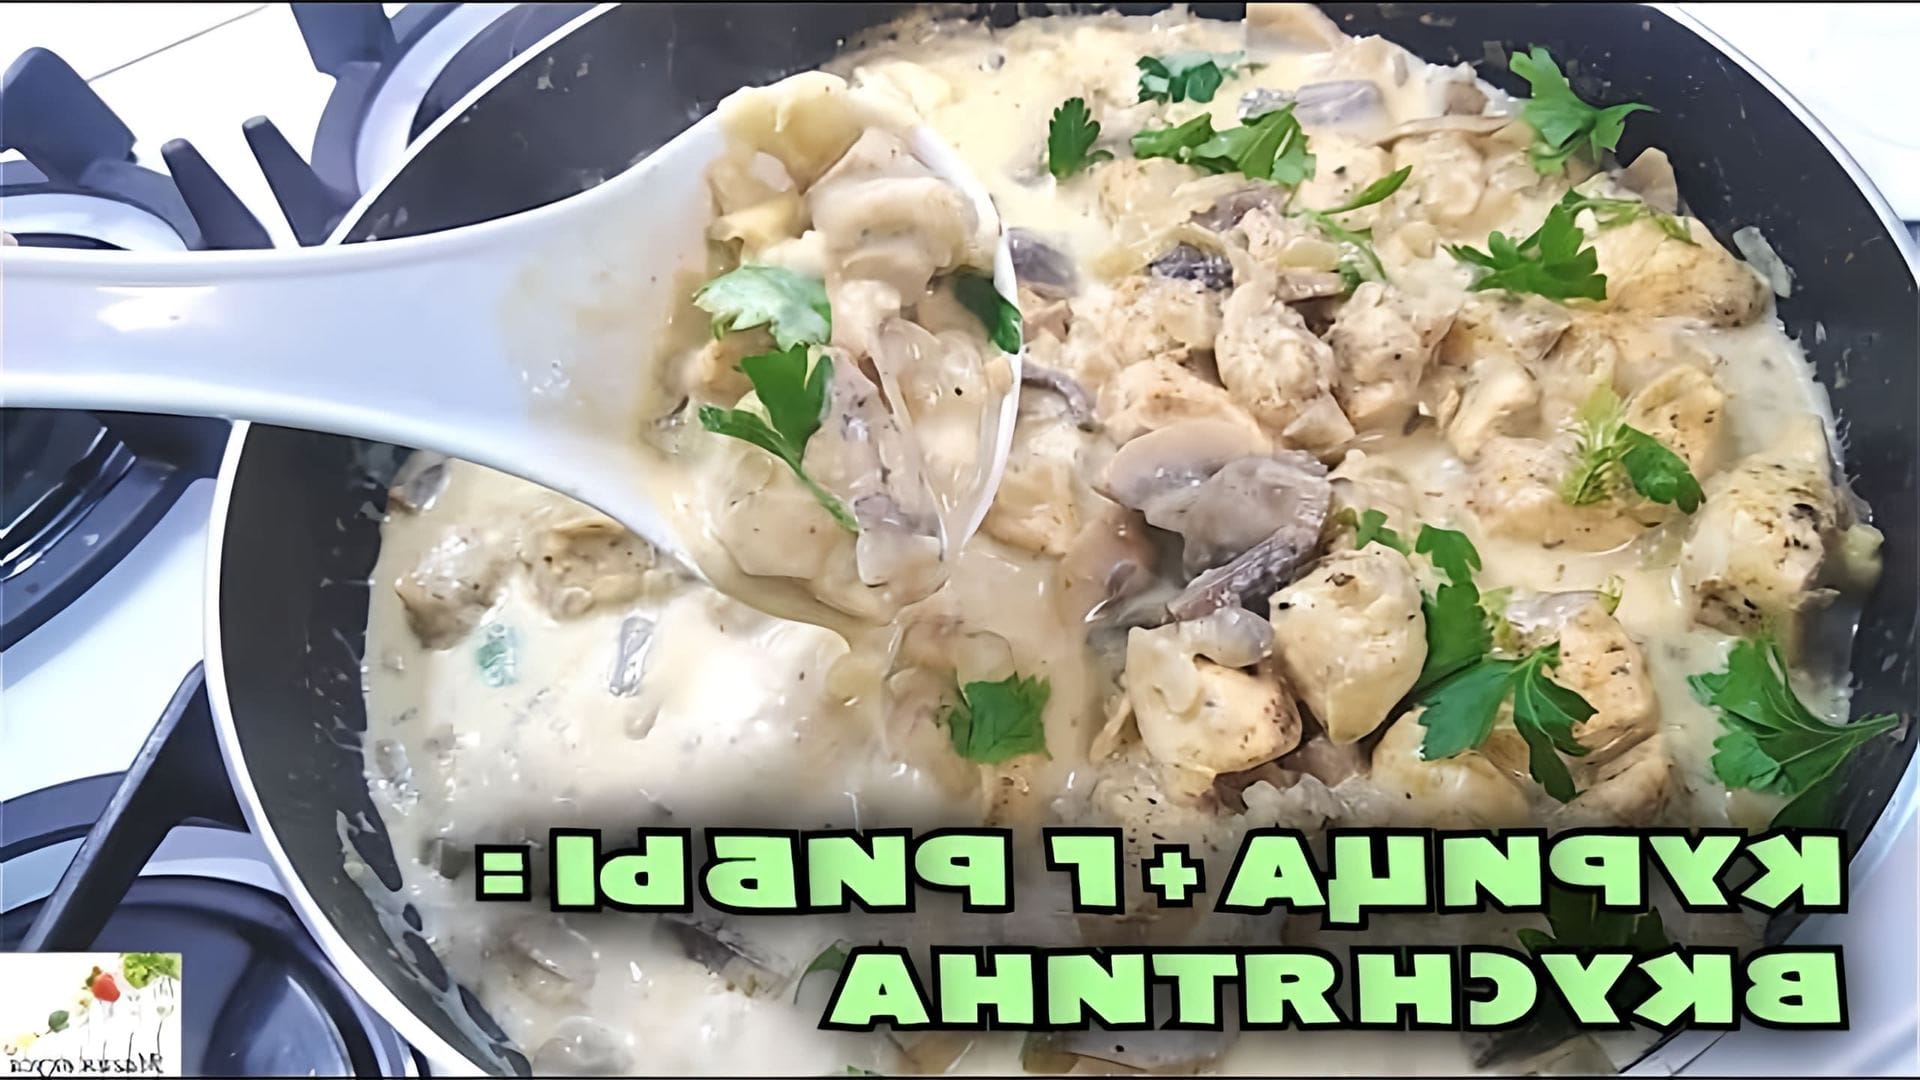 В этом видео демонстрируется процесс приготовления вкусного ужина из курицы и грибов в сметанном соусе